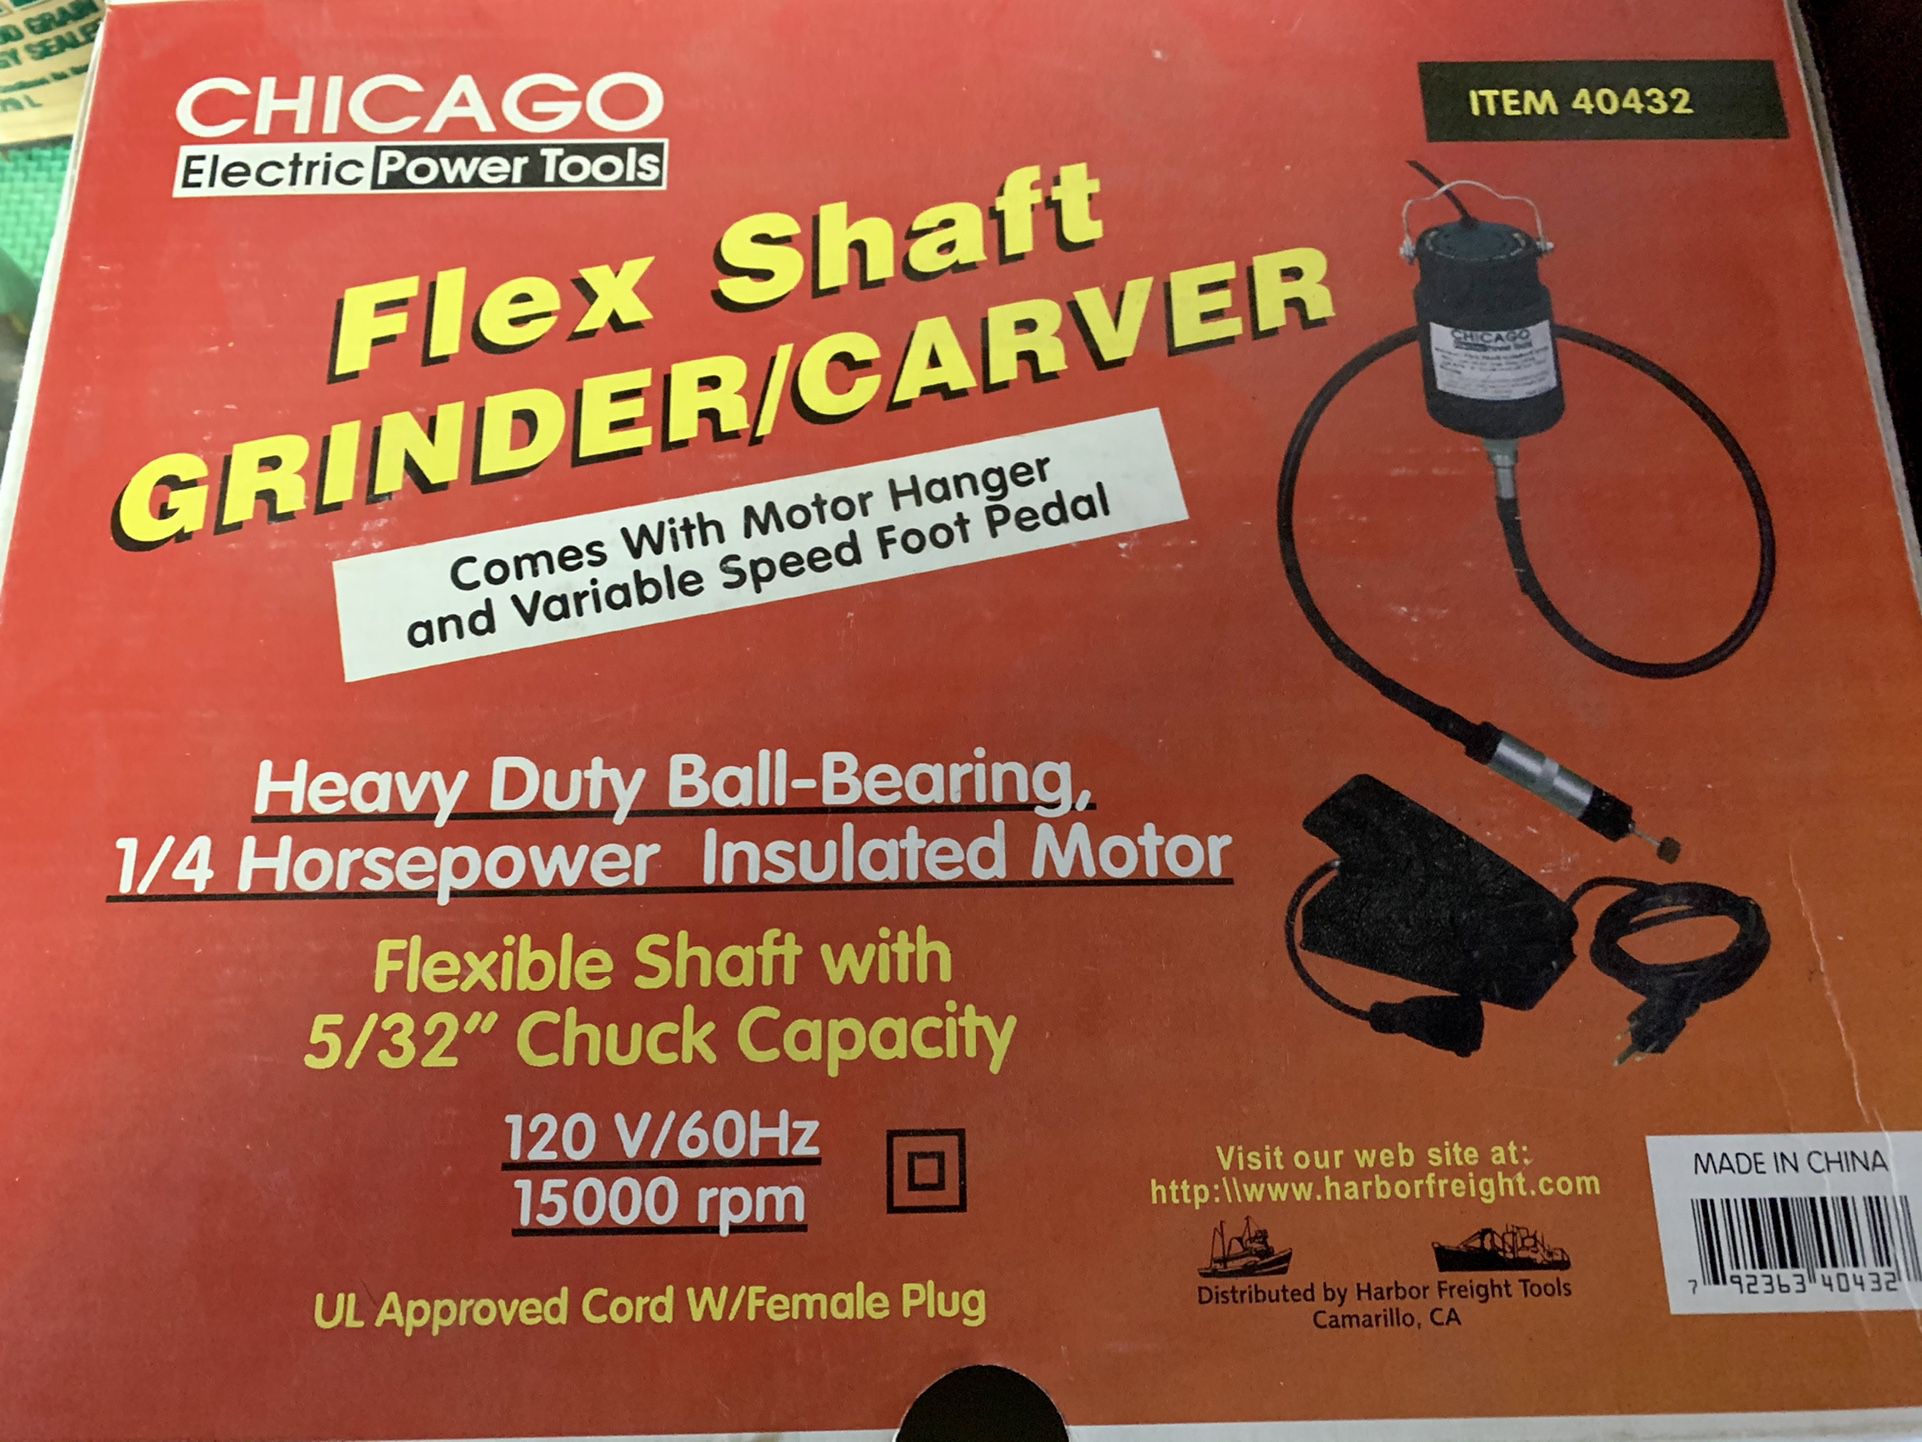 Chicago Flex Shaft Grinder/carver